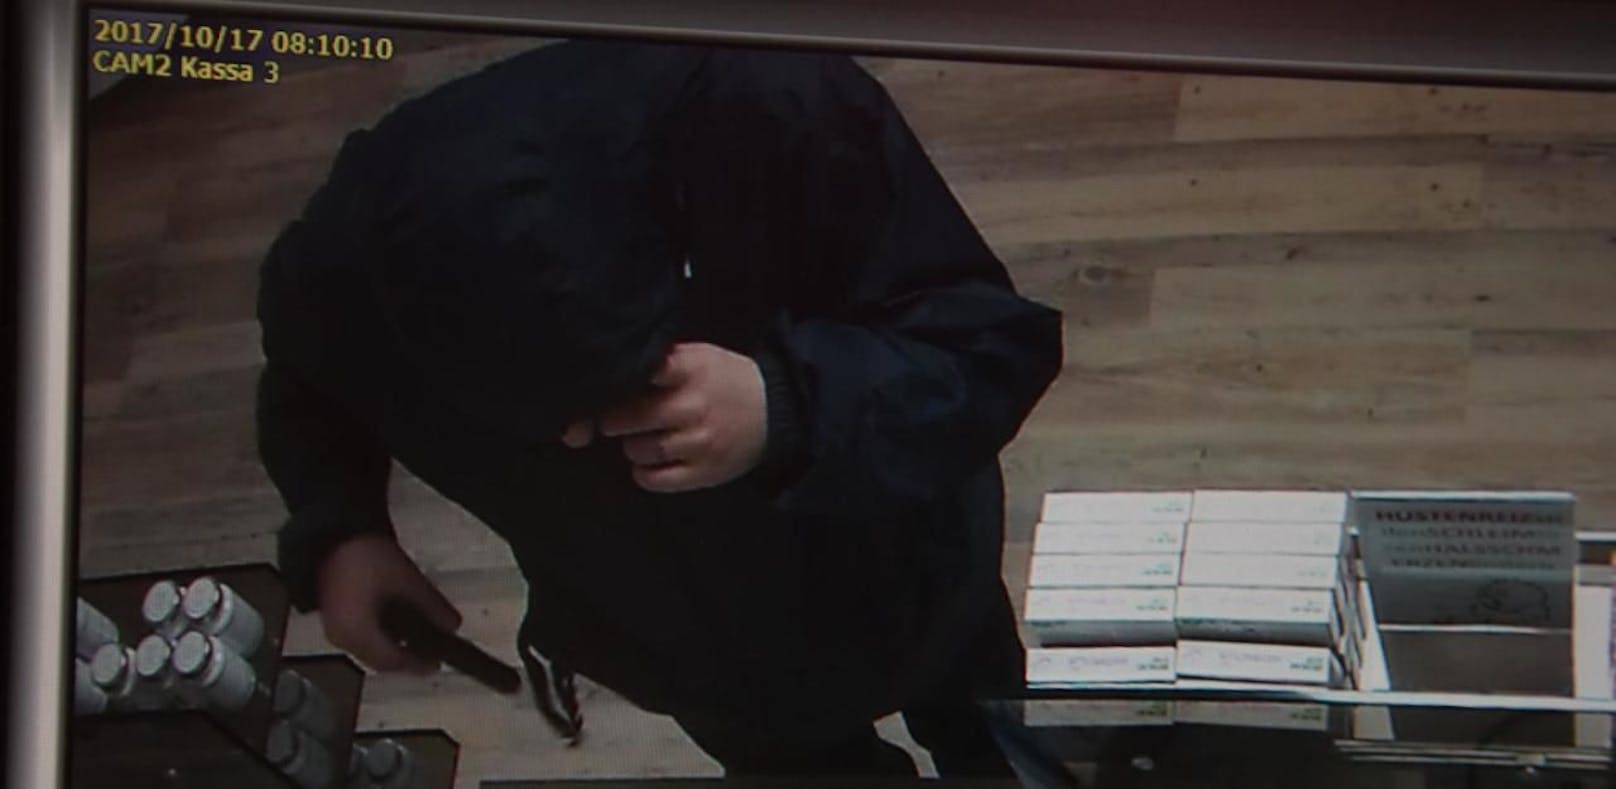 Fahndung: Mann überfällt Apotheke mit Pistole